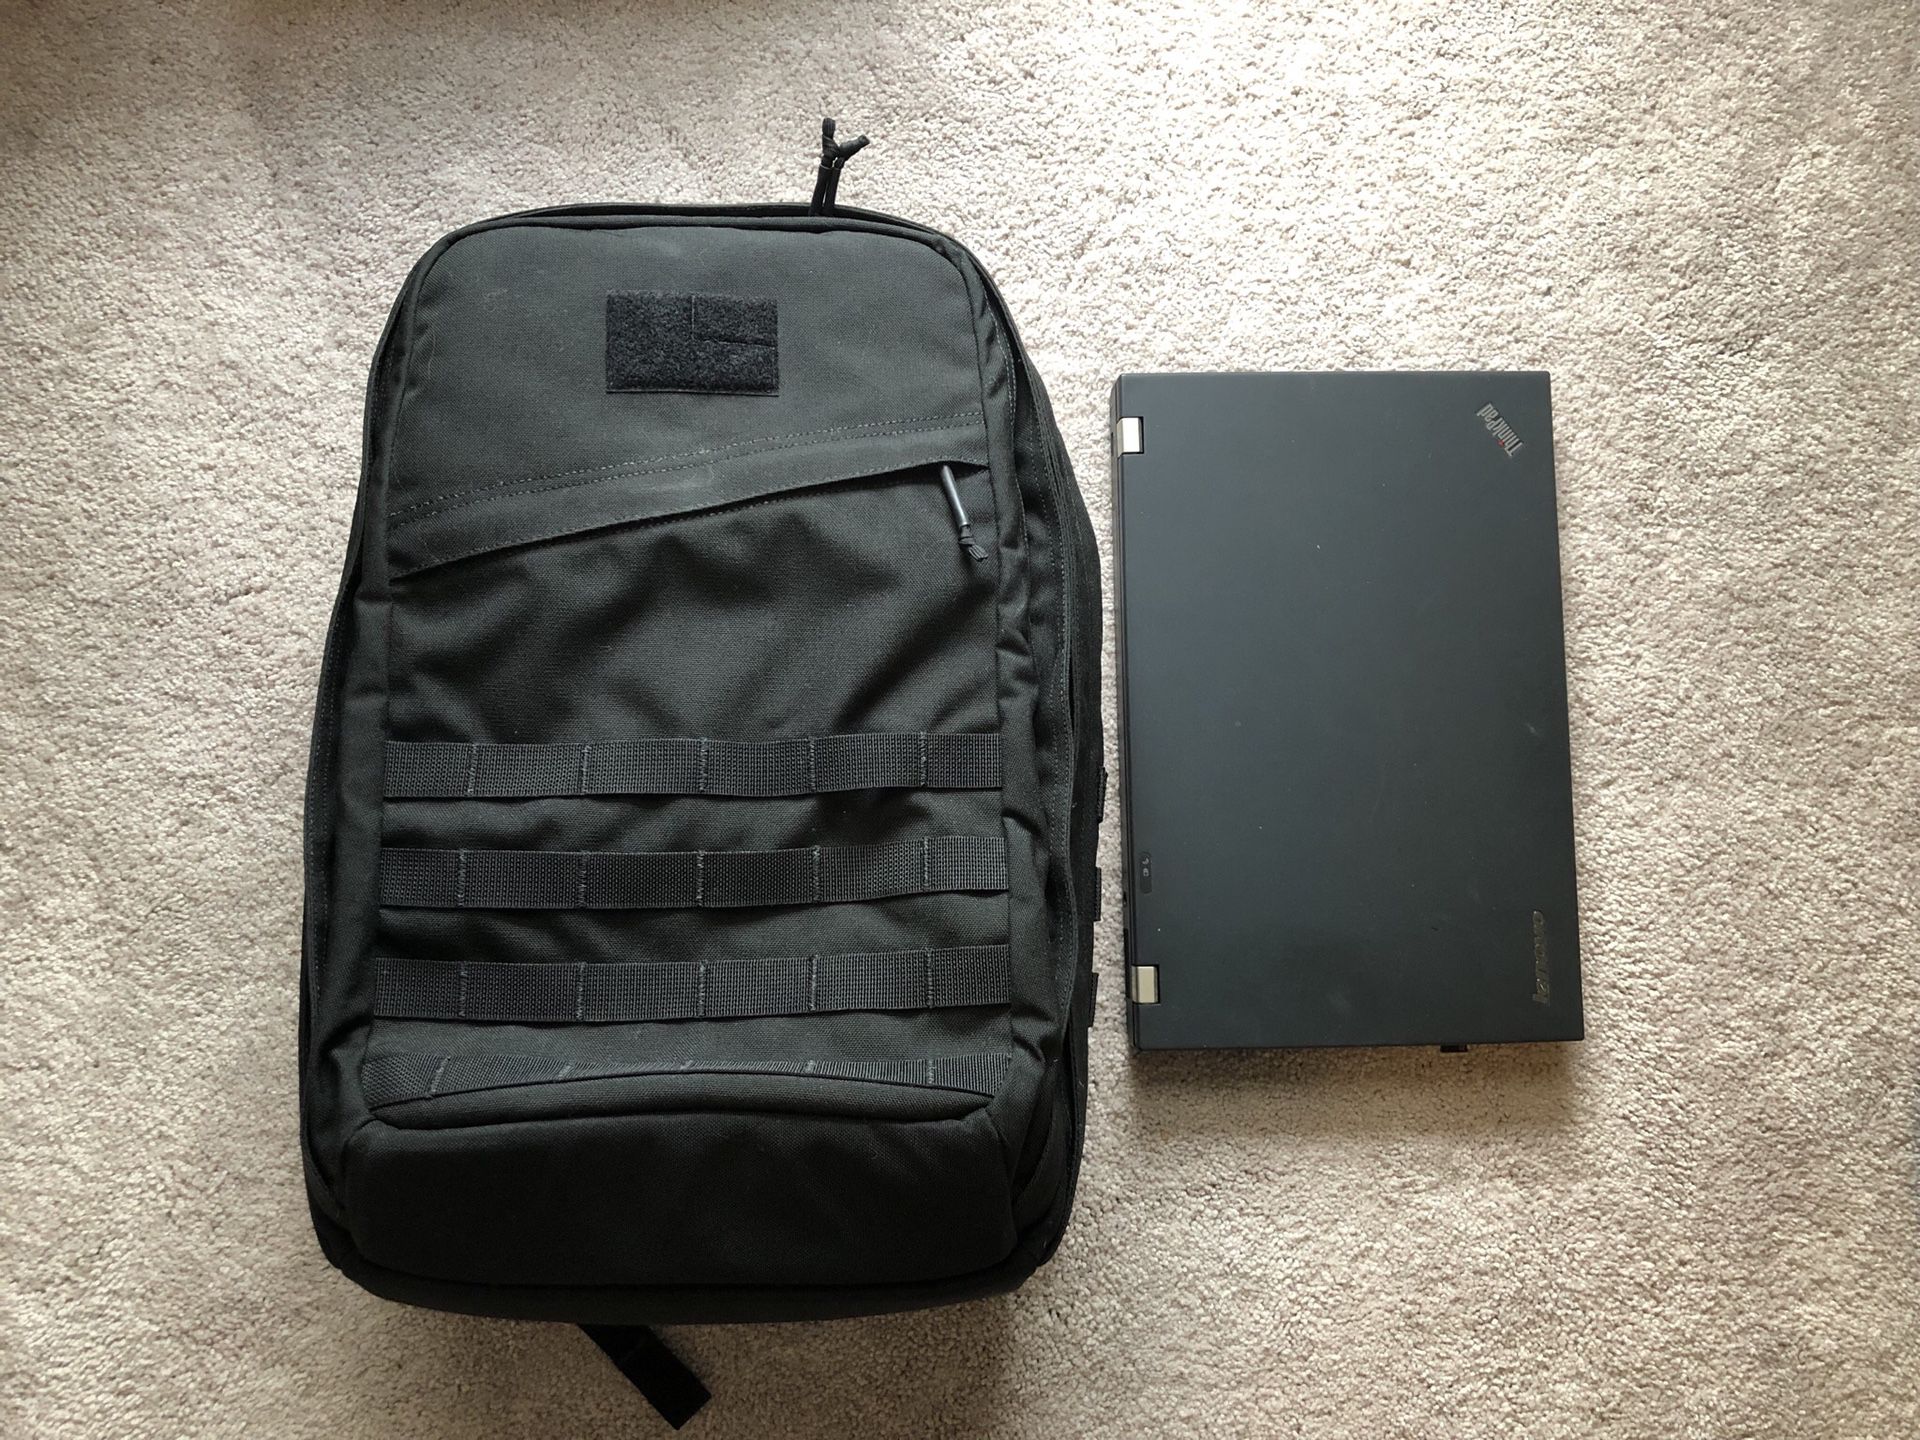 GORUCK GR2 backpack